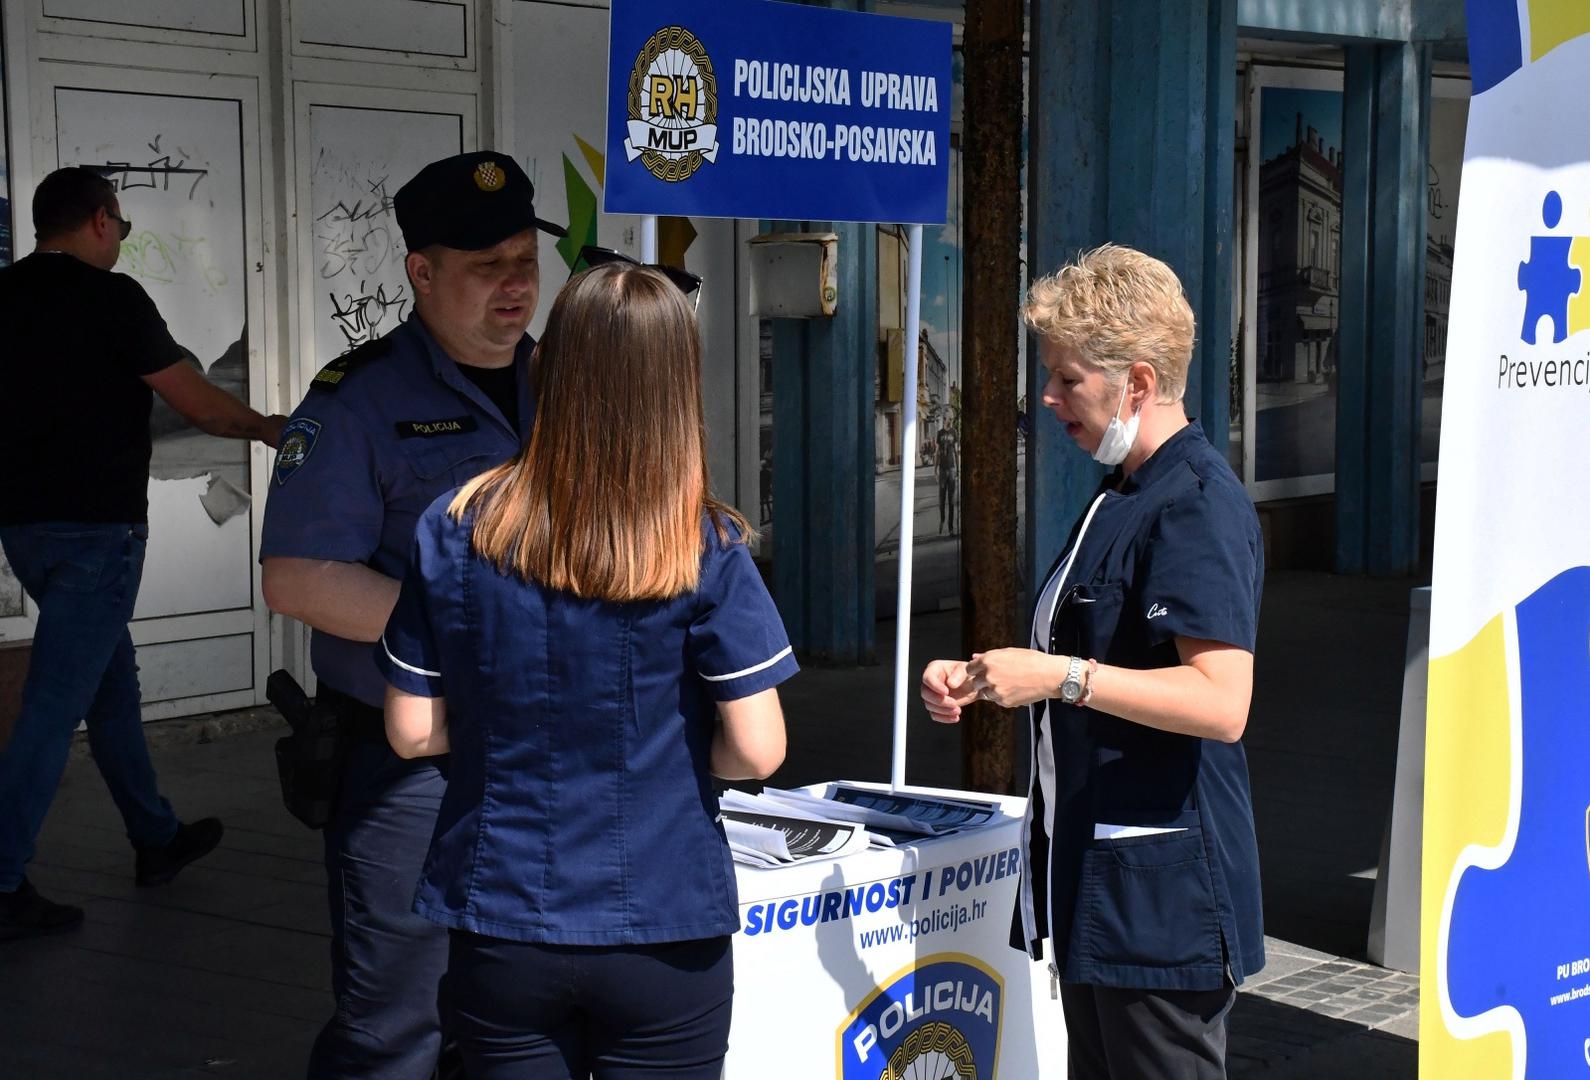 22.07.2021., Slavonski Brod - Preventivno-edukativna akcija policije u vezi stradavanja djece od dehidracije ostavljenih u vozilima za velikih vrucina. 
Photo: Ivica Galovic/PIXSELL